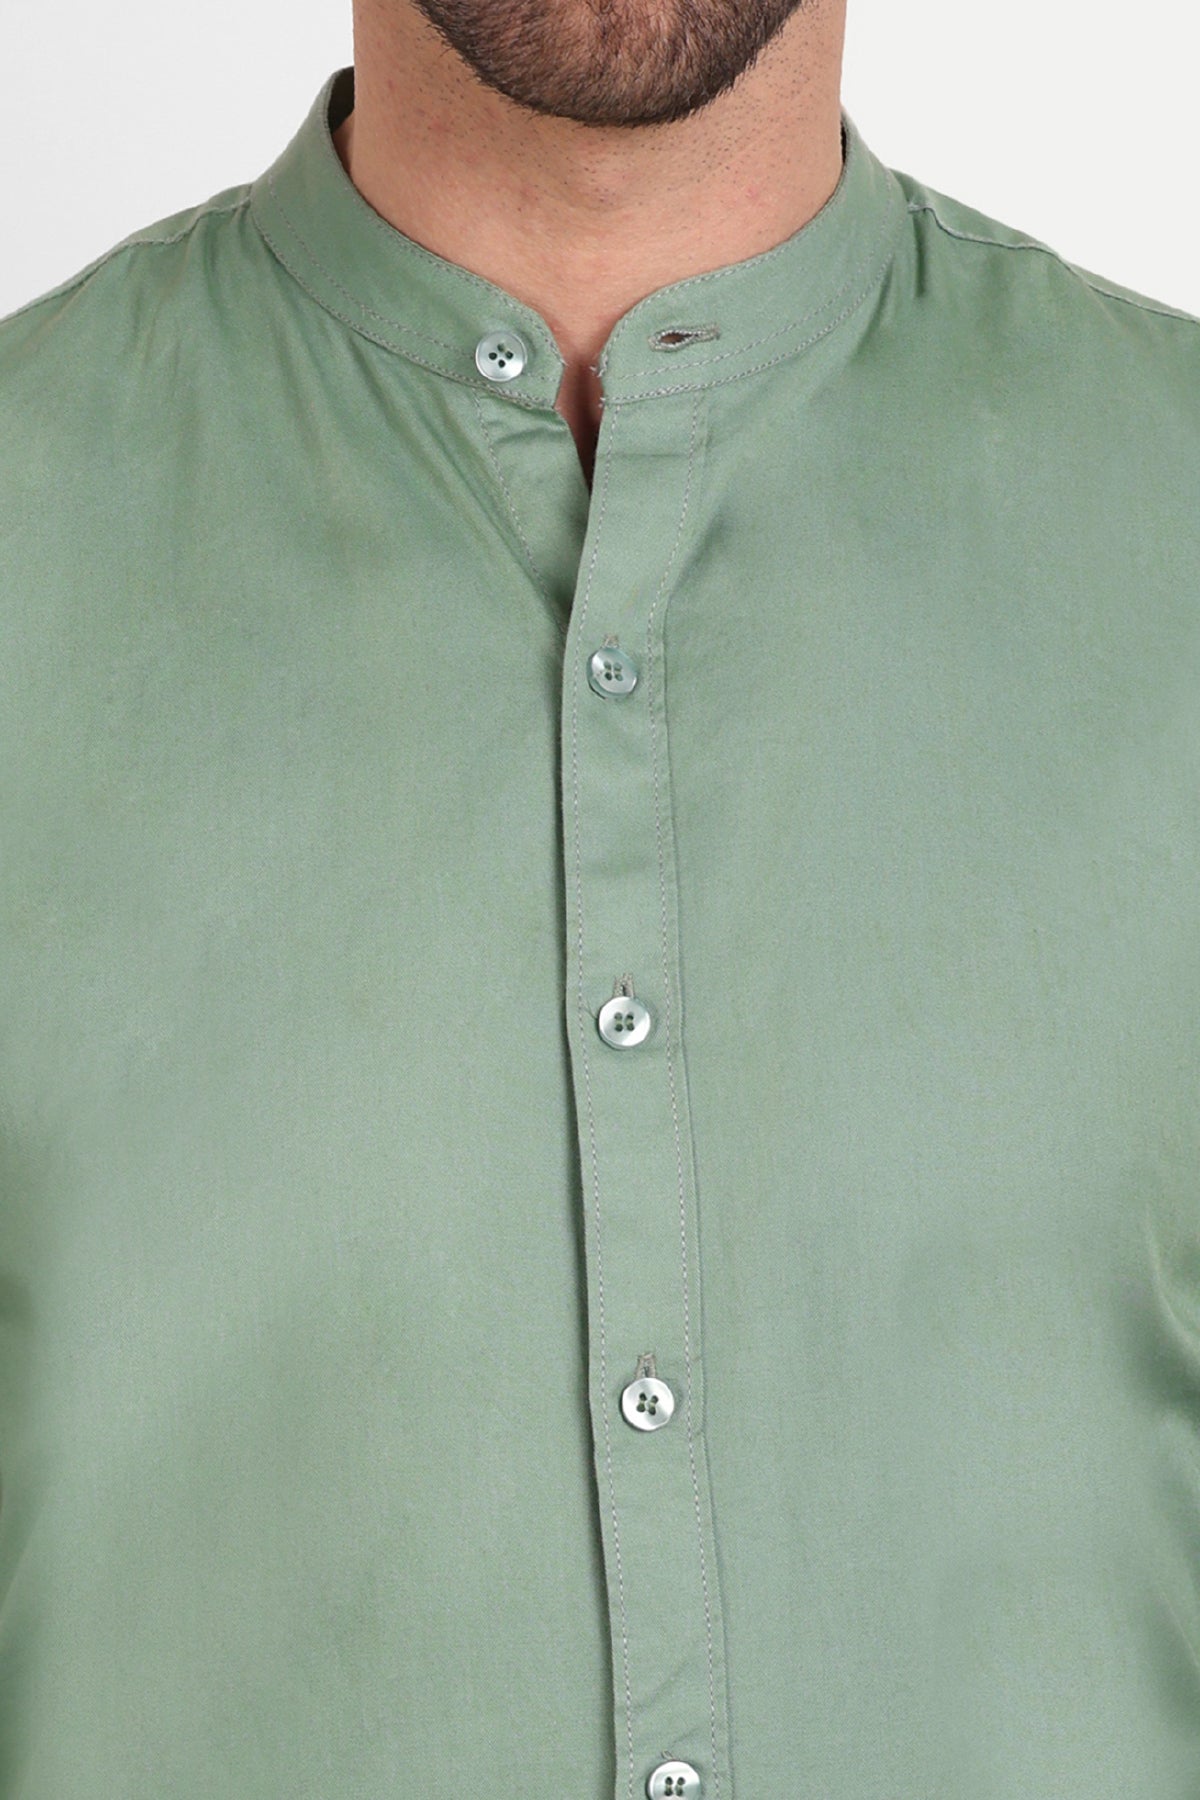 Men Slim Fit Mandarin Collar Sage Green Shirt